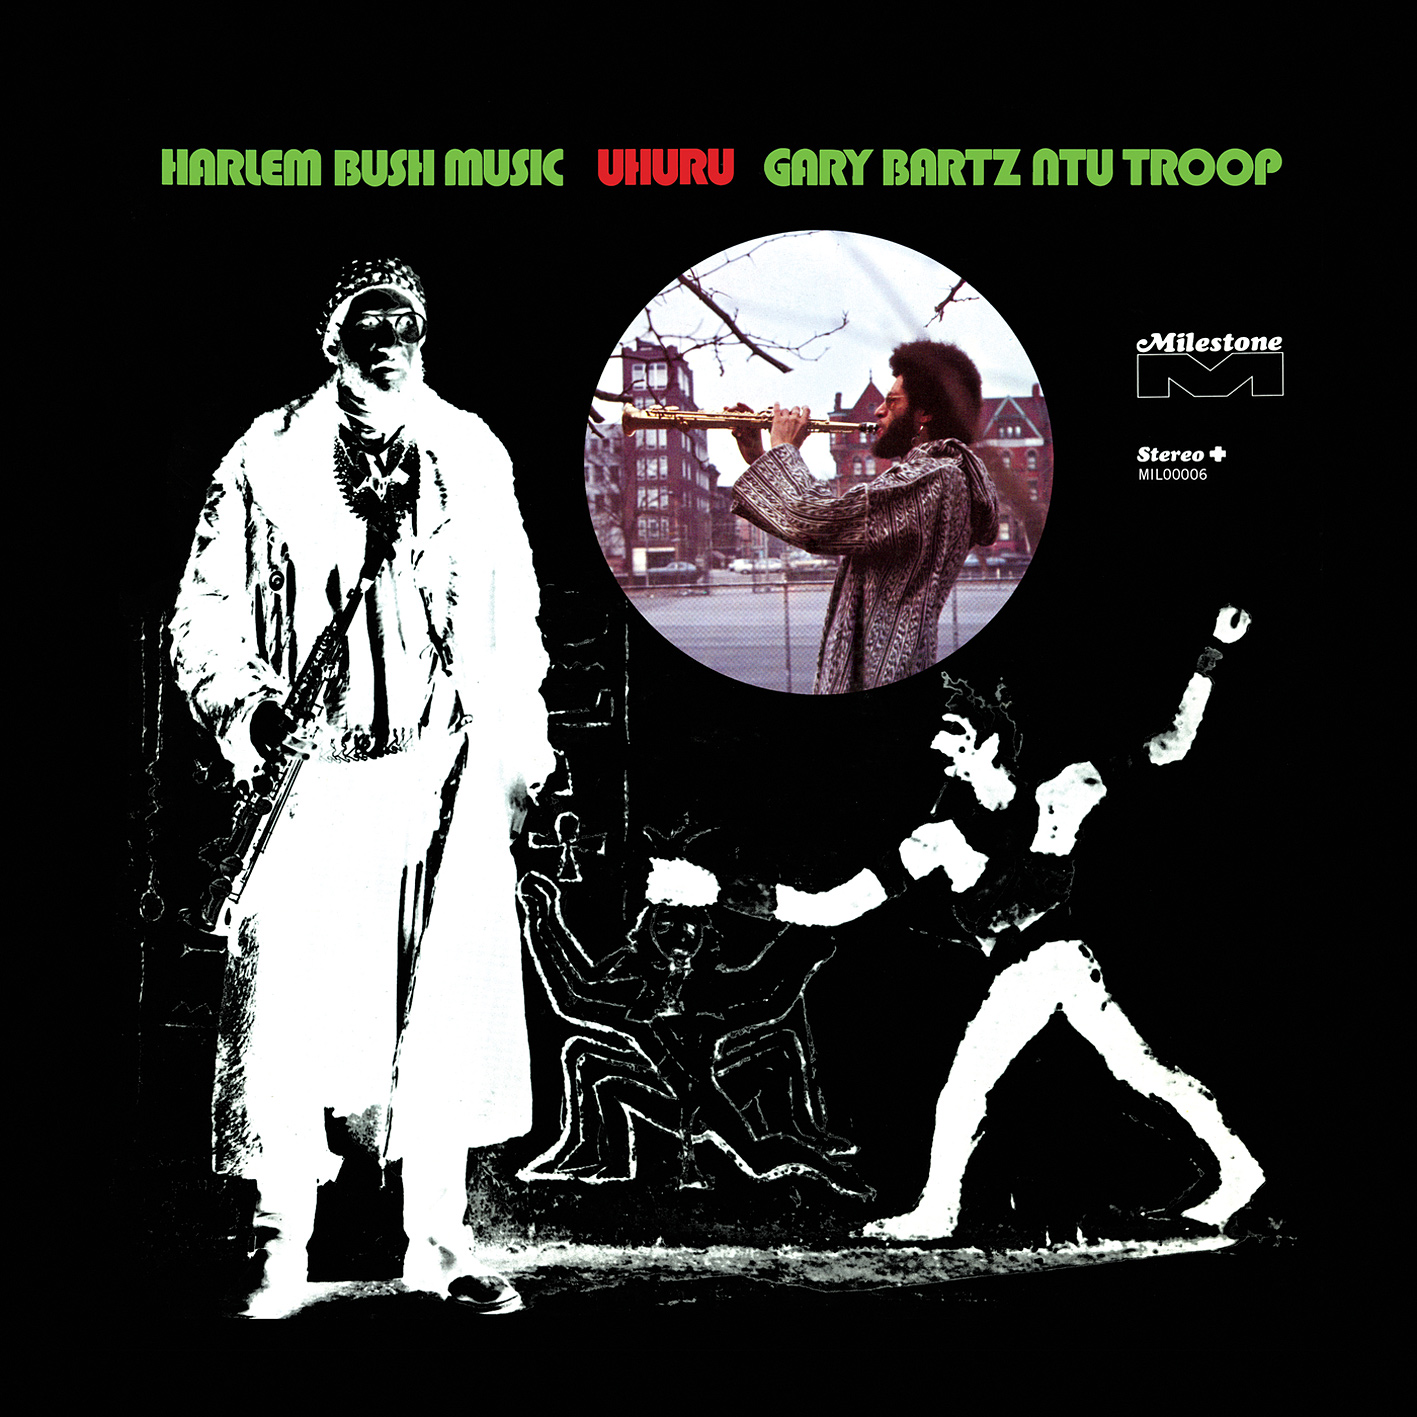 Gary Bartz NTU Troop - Harlem Bush Music: Uhuru (1971/2017) [HDTracks FLAC 24bit/192kHz]